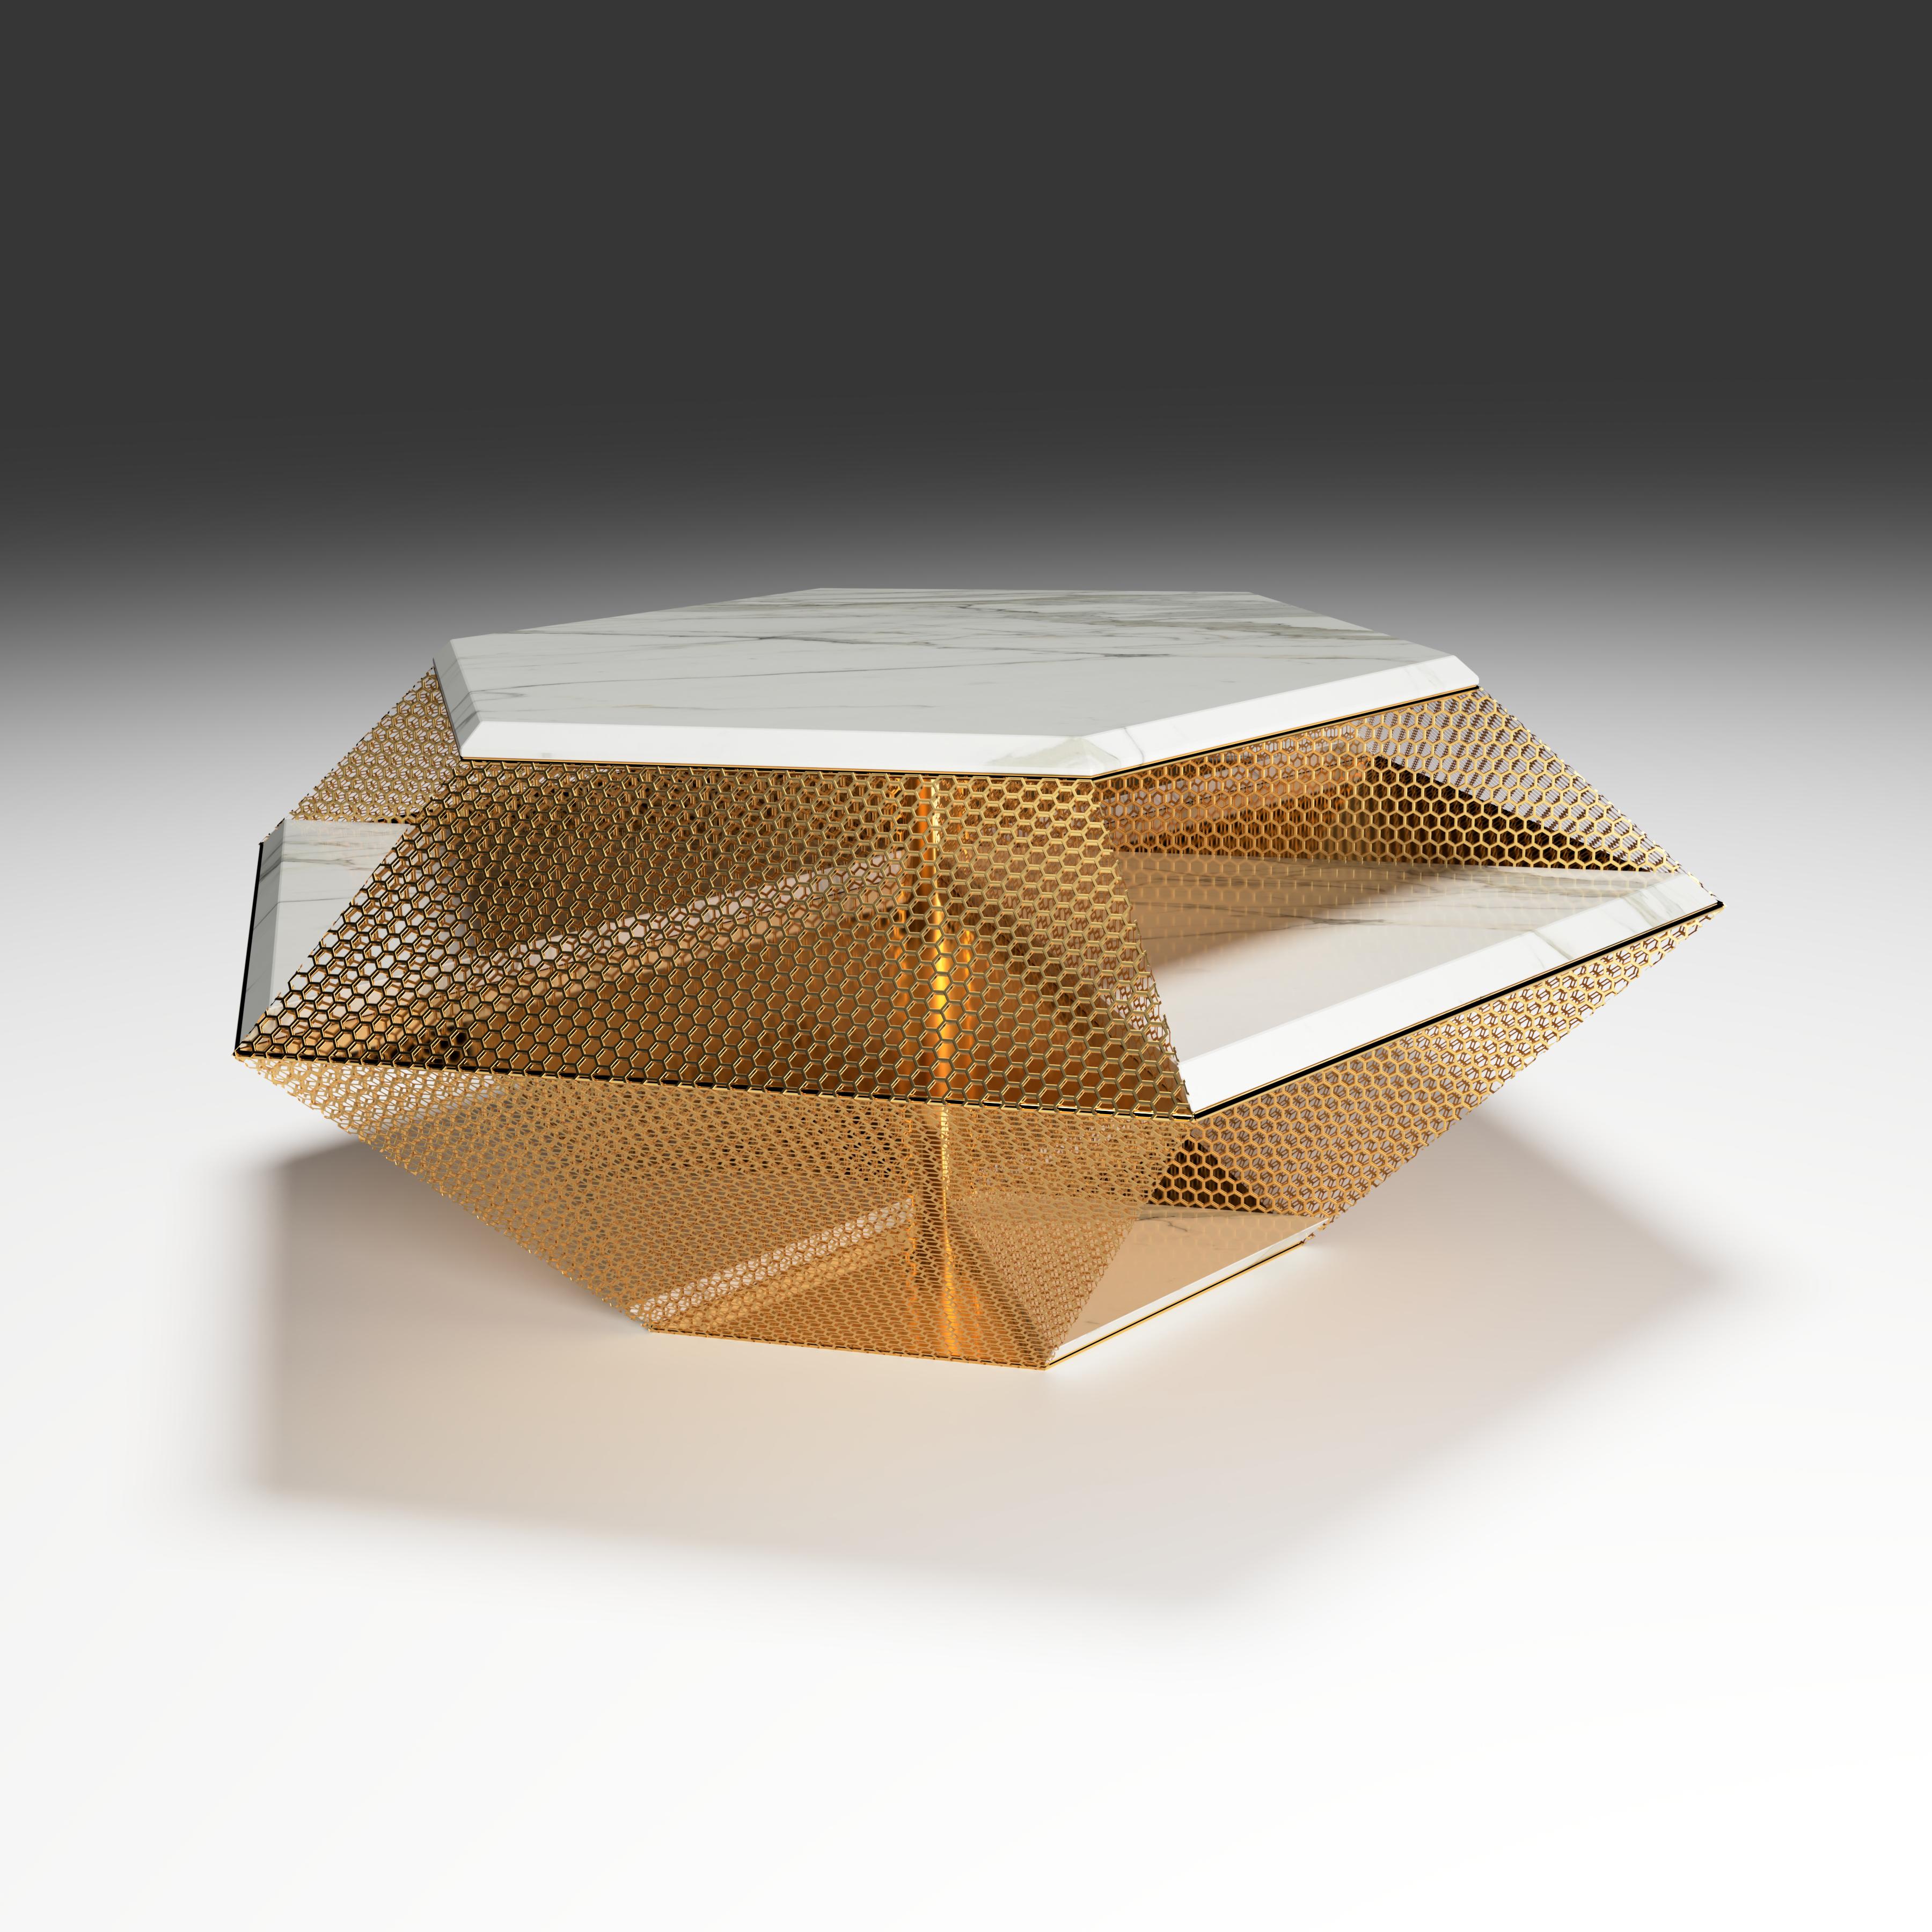 La table centrale du diamant brut, 1 de 1 par Grzegorz Majka
Edition 1 de 1
Dimensions : 45.67 x 39.37 x 17.72 in
Matériaux : laiton détails. Marbre blanc de Calcatta. 


La principale inspiration pour créer cette table moderne, avec une